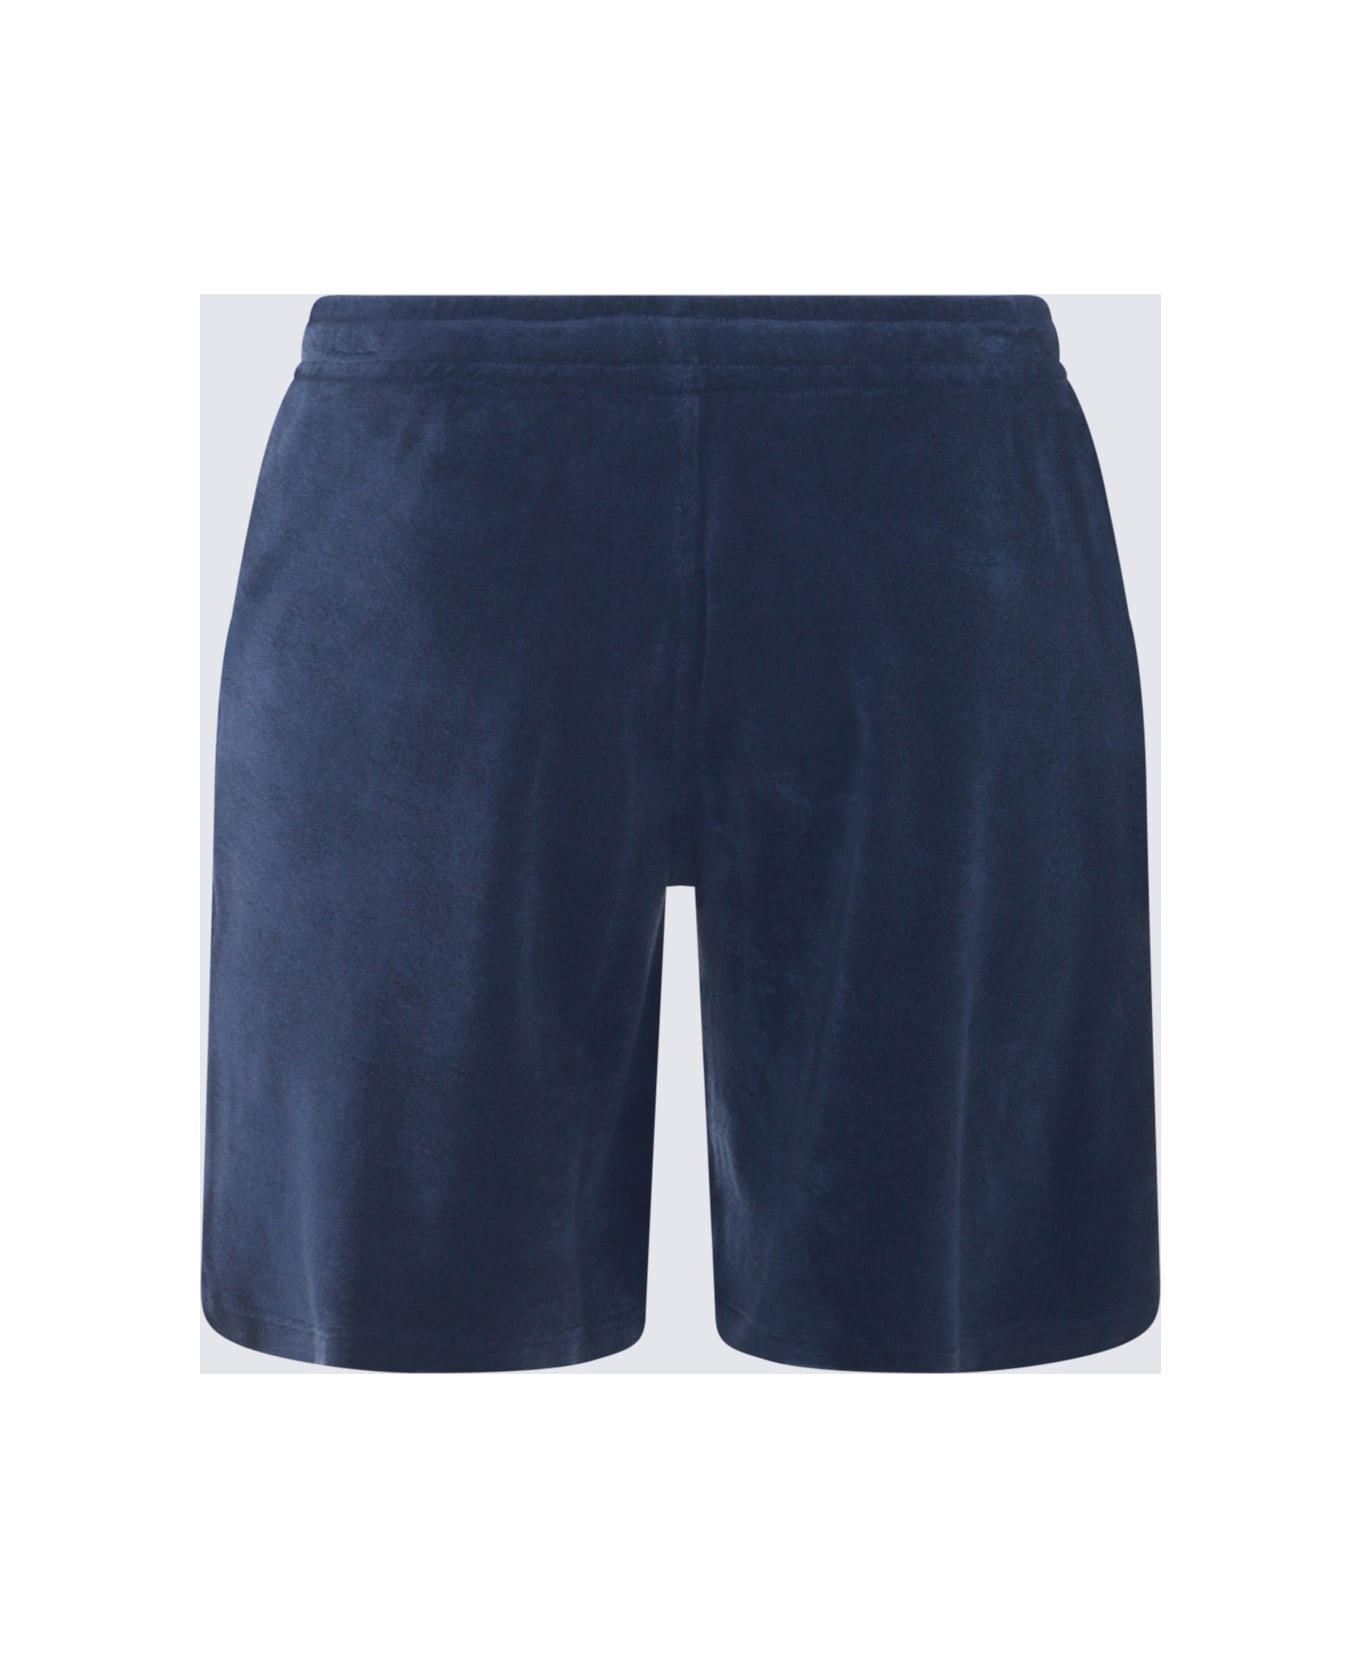 Altea Blue Cotton Shorts - Blue